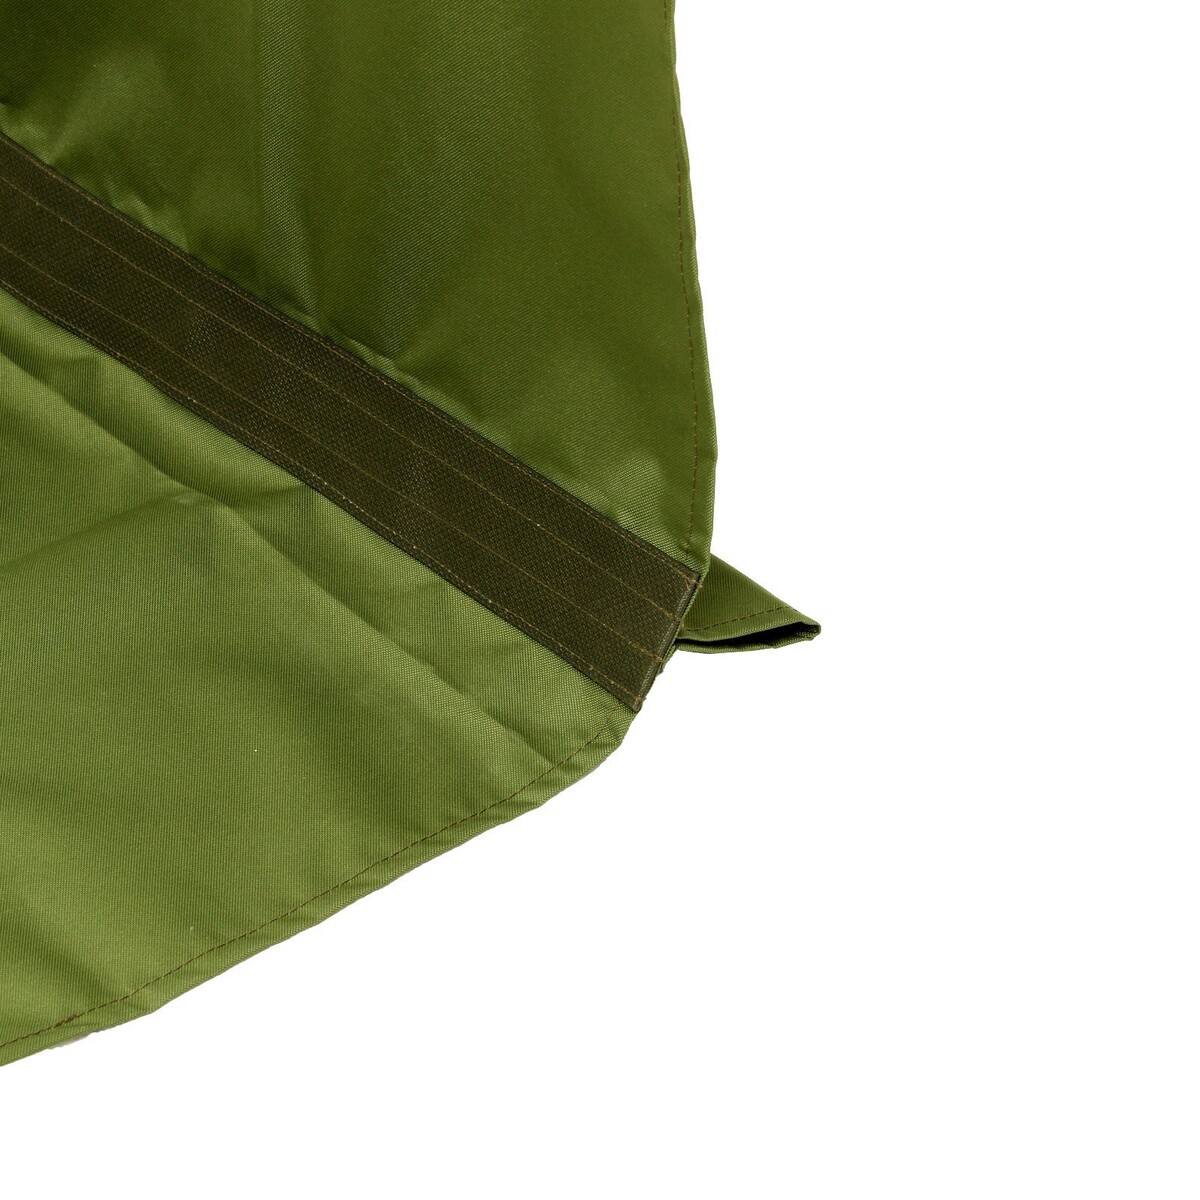 Усиленное тканевое сиденье для садовых качелей 150x50/50 см, оксфорд 600, олива No brand, цвет зеленый 02852689 - фото 3